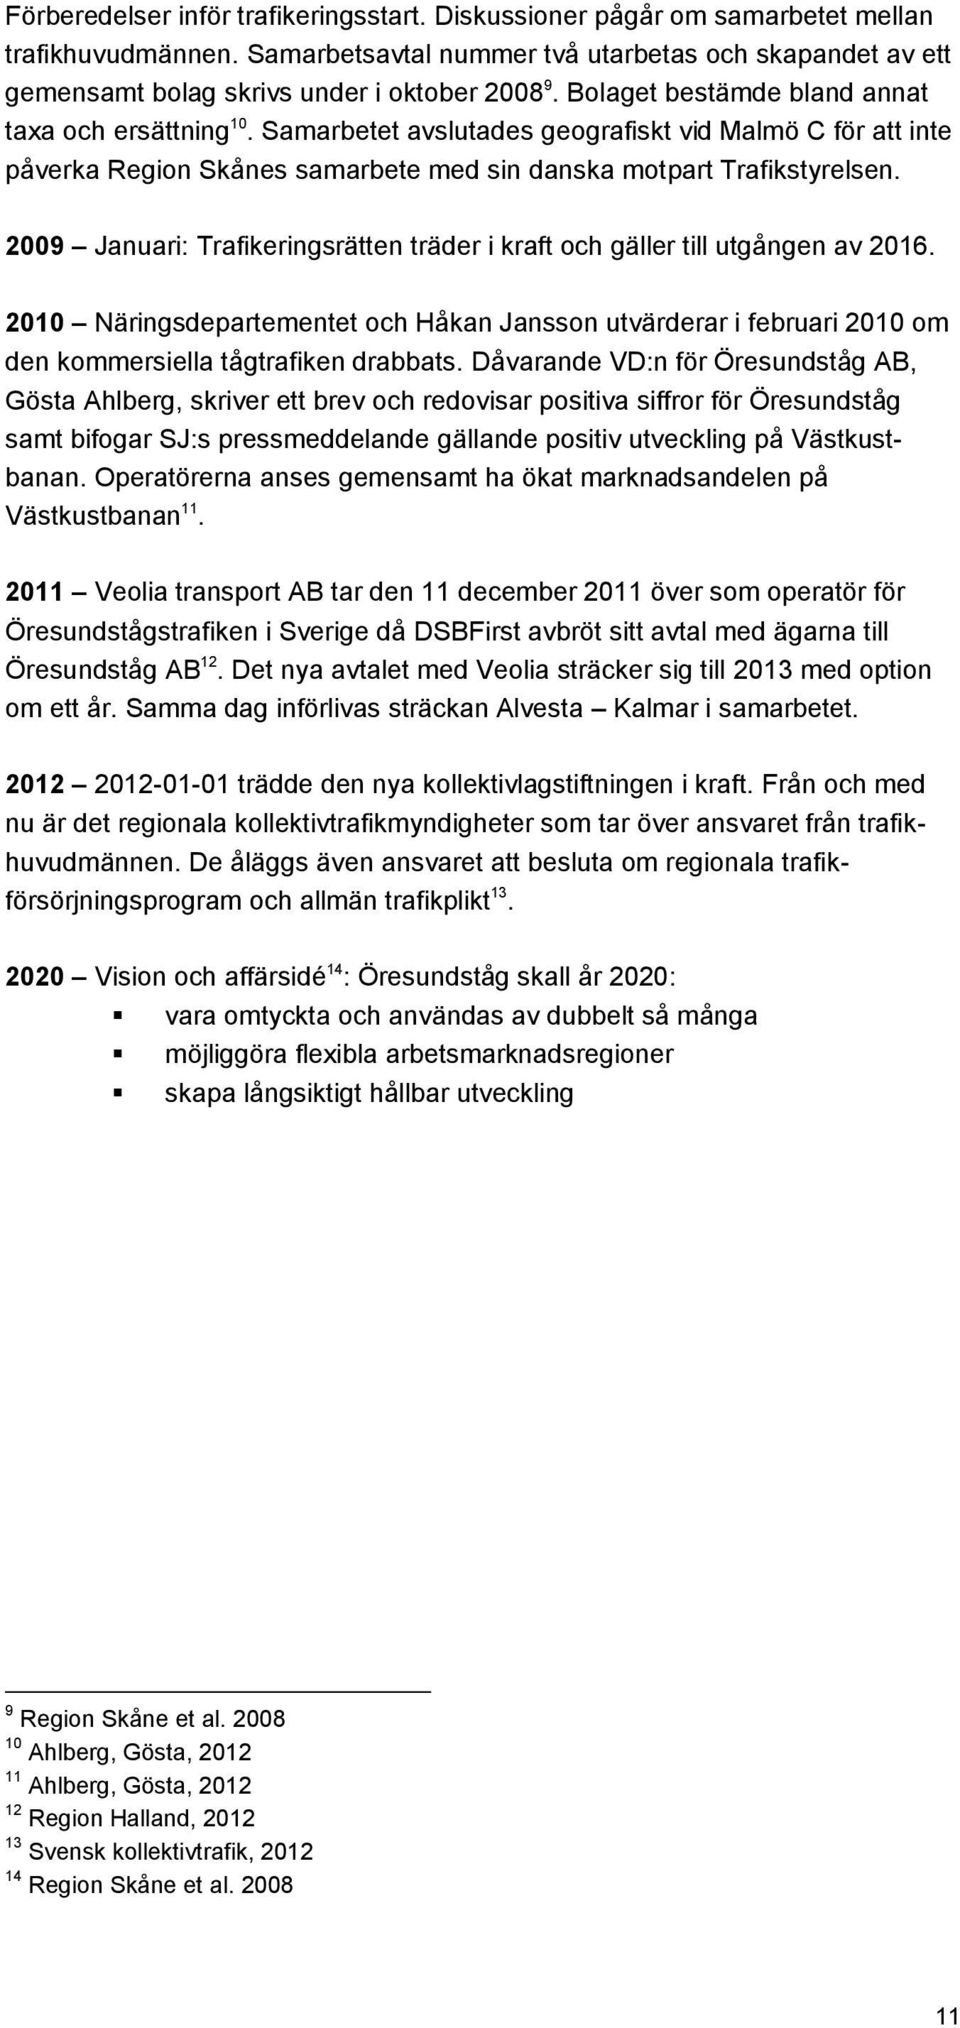 Samarbetet avslutades geografiskt vid Malmö C för att inte påverka Region Skånes samarbete med sin danska motpart Trafikstyrelsen.